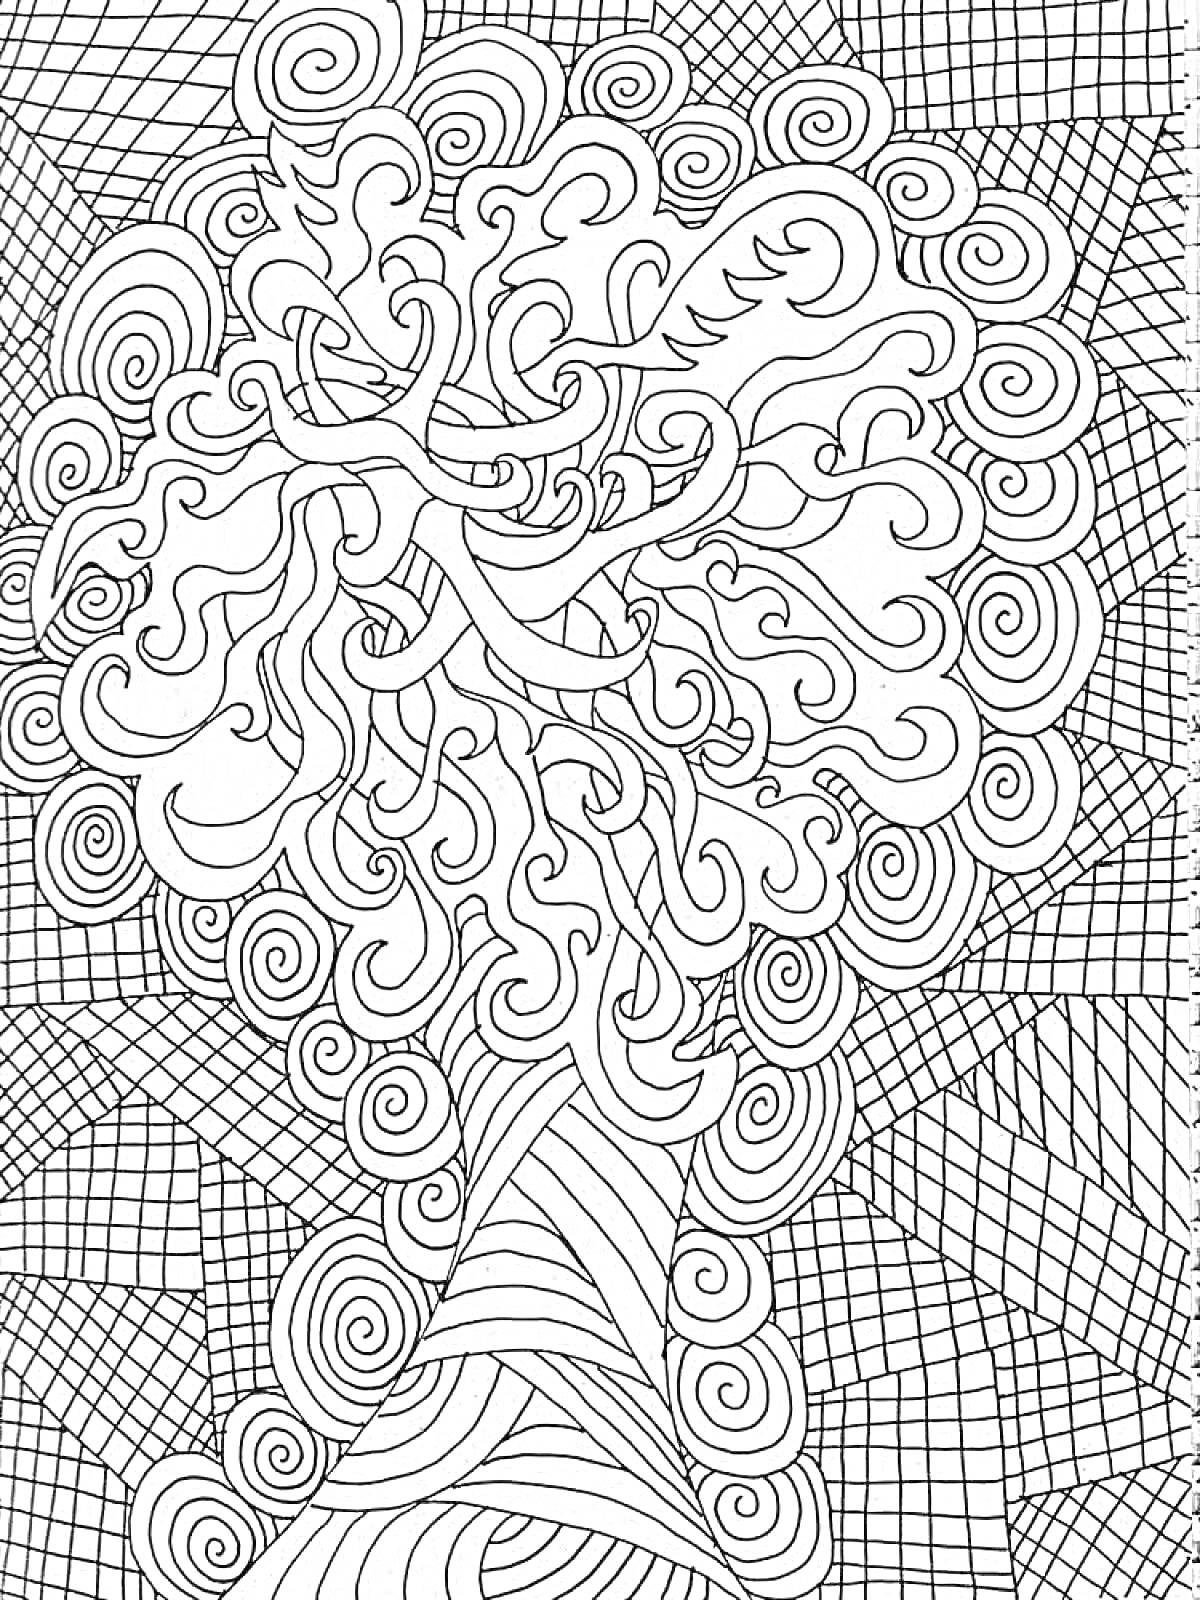 Раскраска Антистресс раскраска с деревом и узорами (волнистые линии и квадраты)